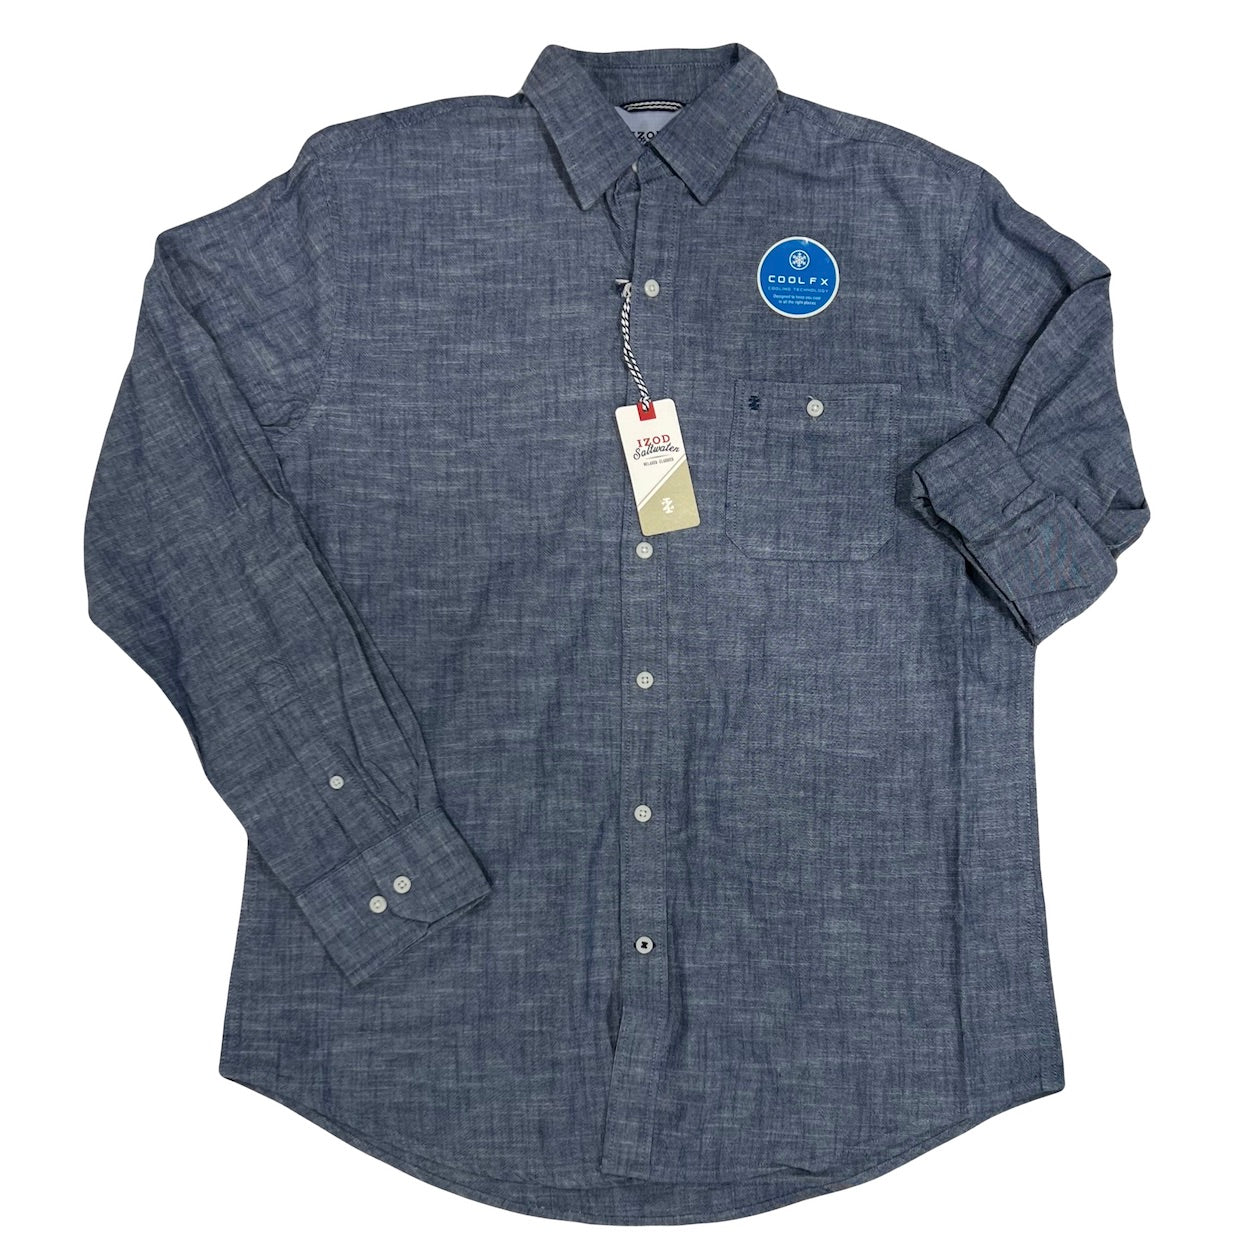 Shop Jean Button T Shirts Online